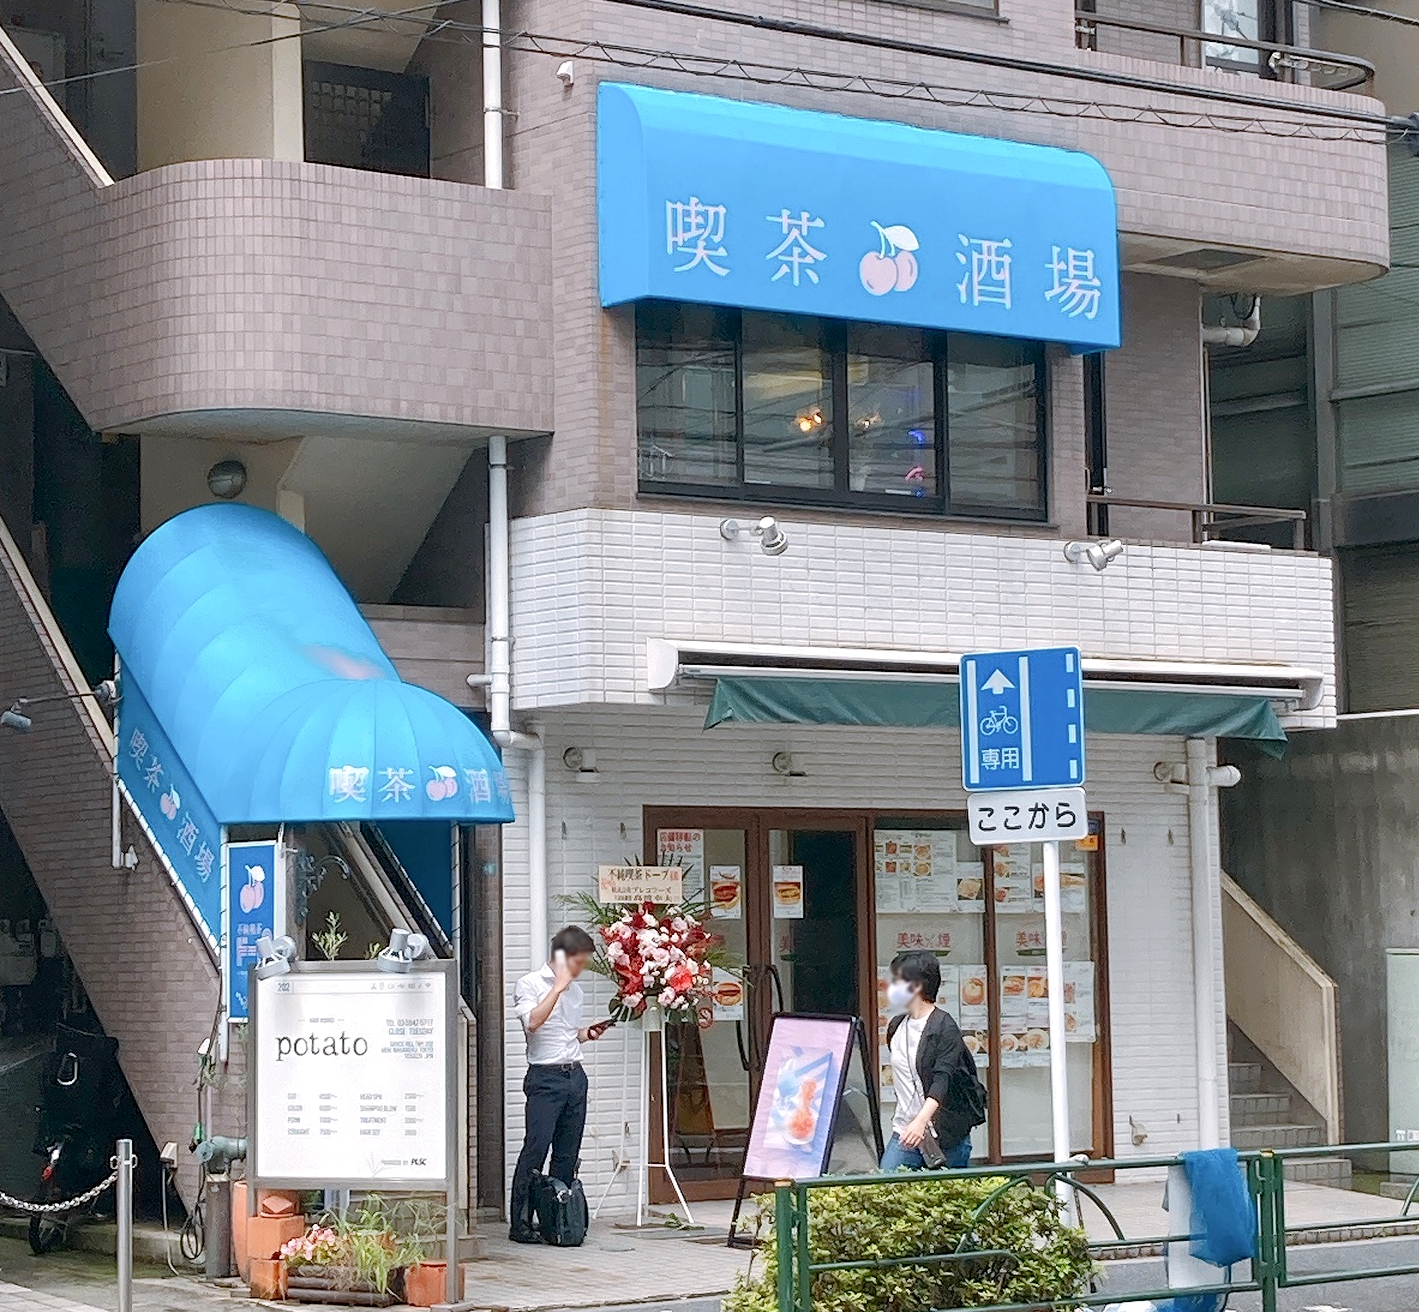 グルメ 異色の喫茶店 昭和レトロな 不純喫茶ドープ のプリンが美味い 東京 中野 ロケットニュース24